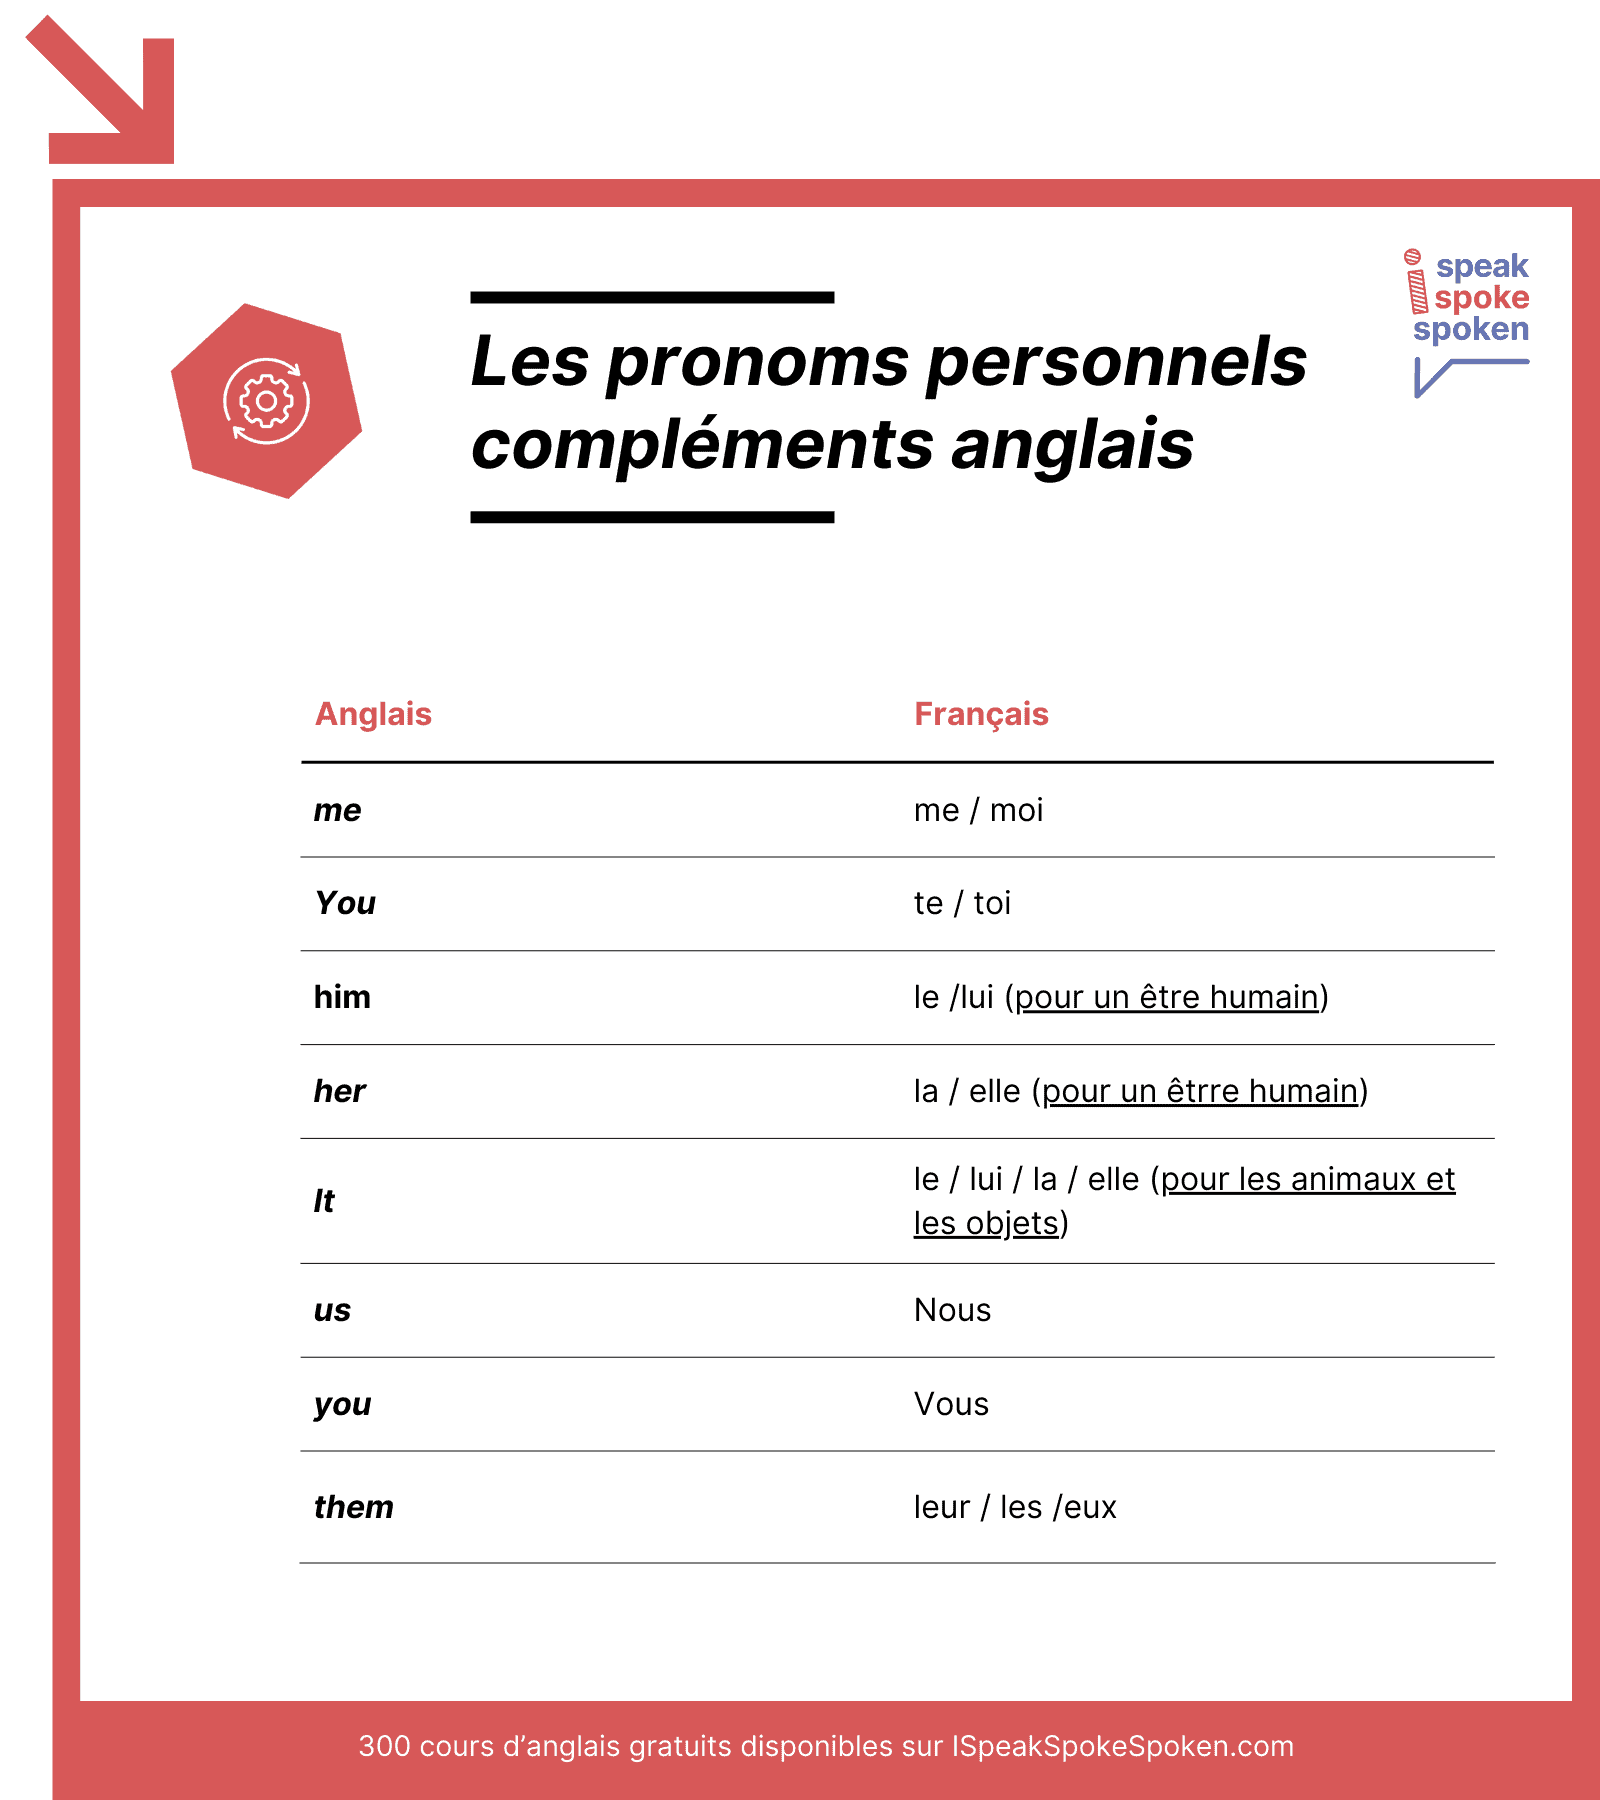 liste des pronoms personnels compléments anglais : me, you, him, her, it, us, you, them